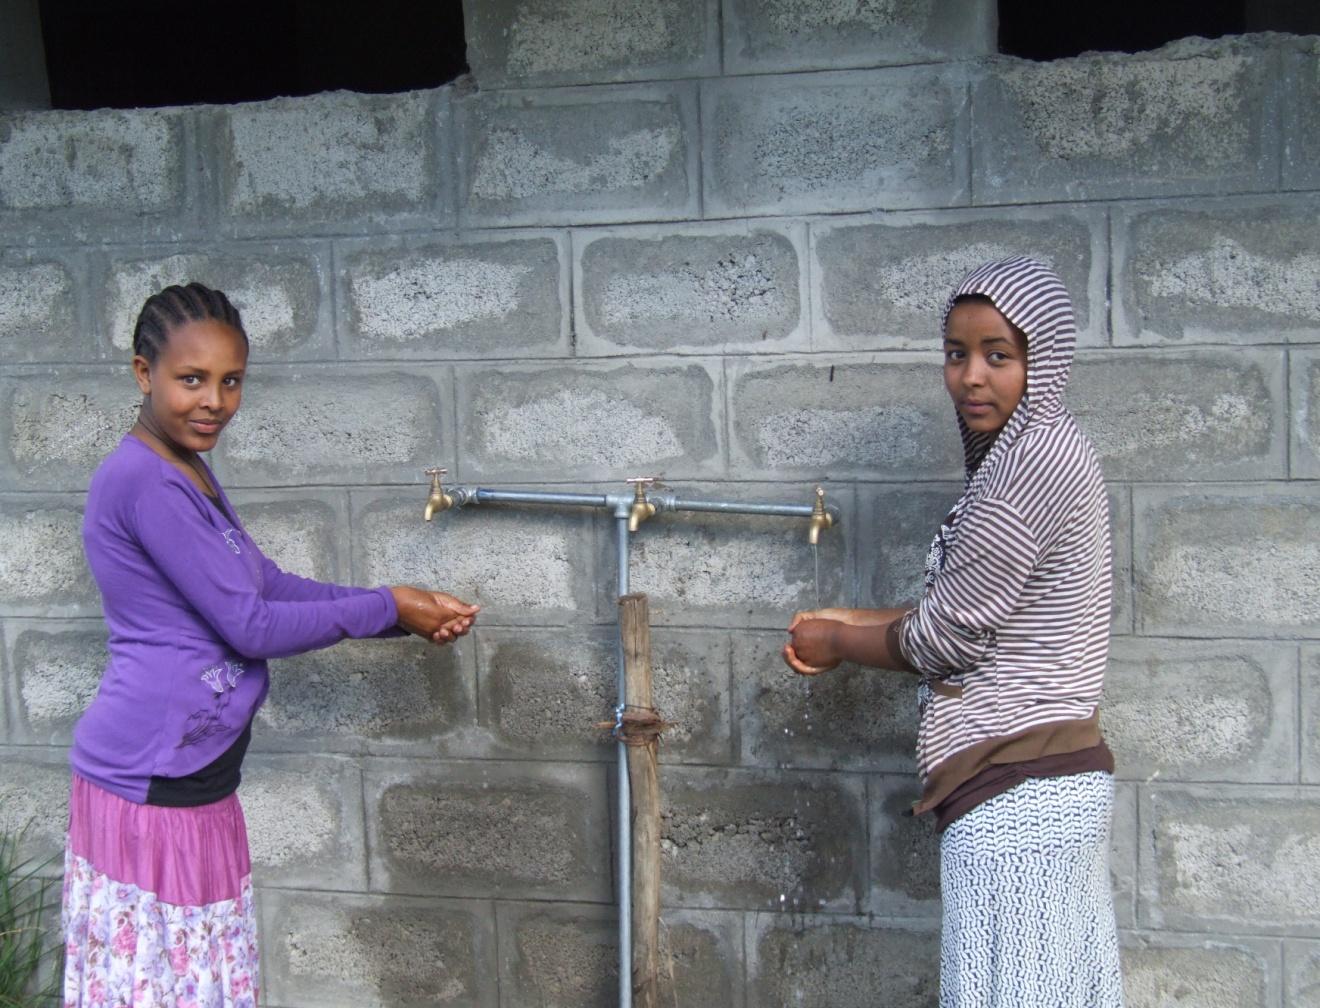 Het dorp betrekt zijn water uit een heel klein reservoir waaruit maar vier uur per dag water kan worden opgepompt om te drinken en voor sanitaire voorzieningen.